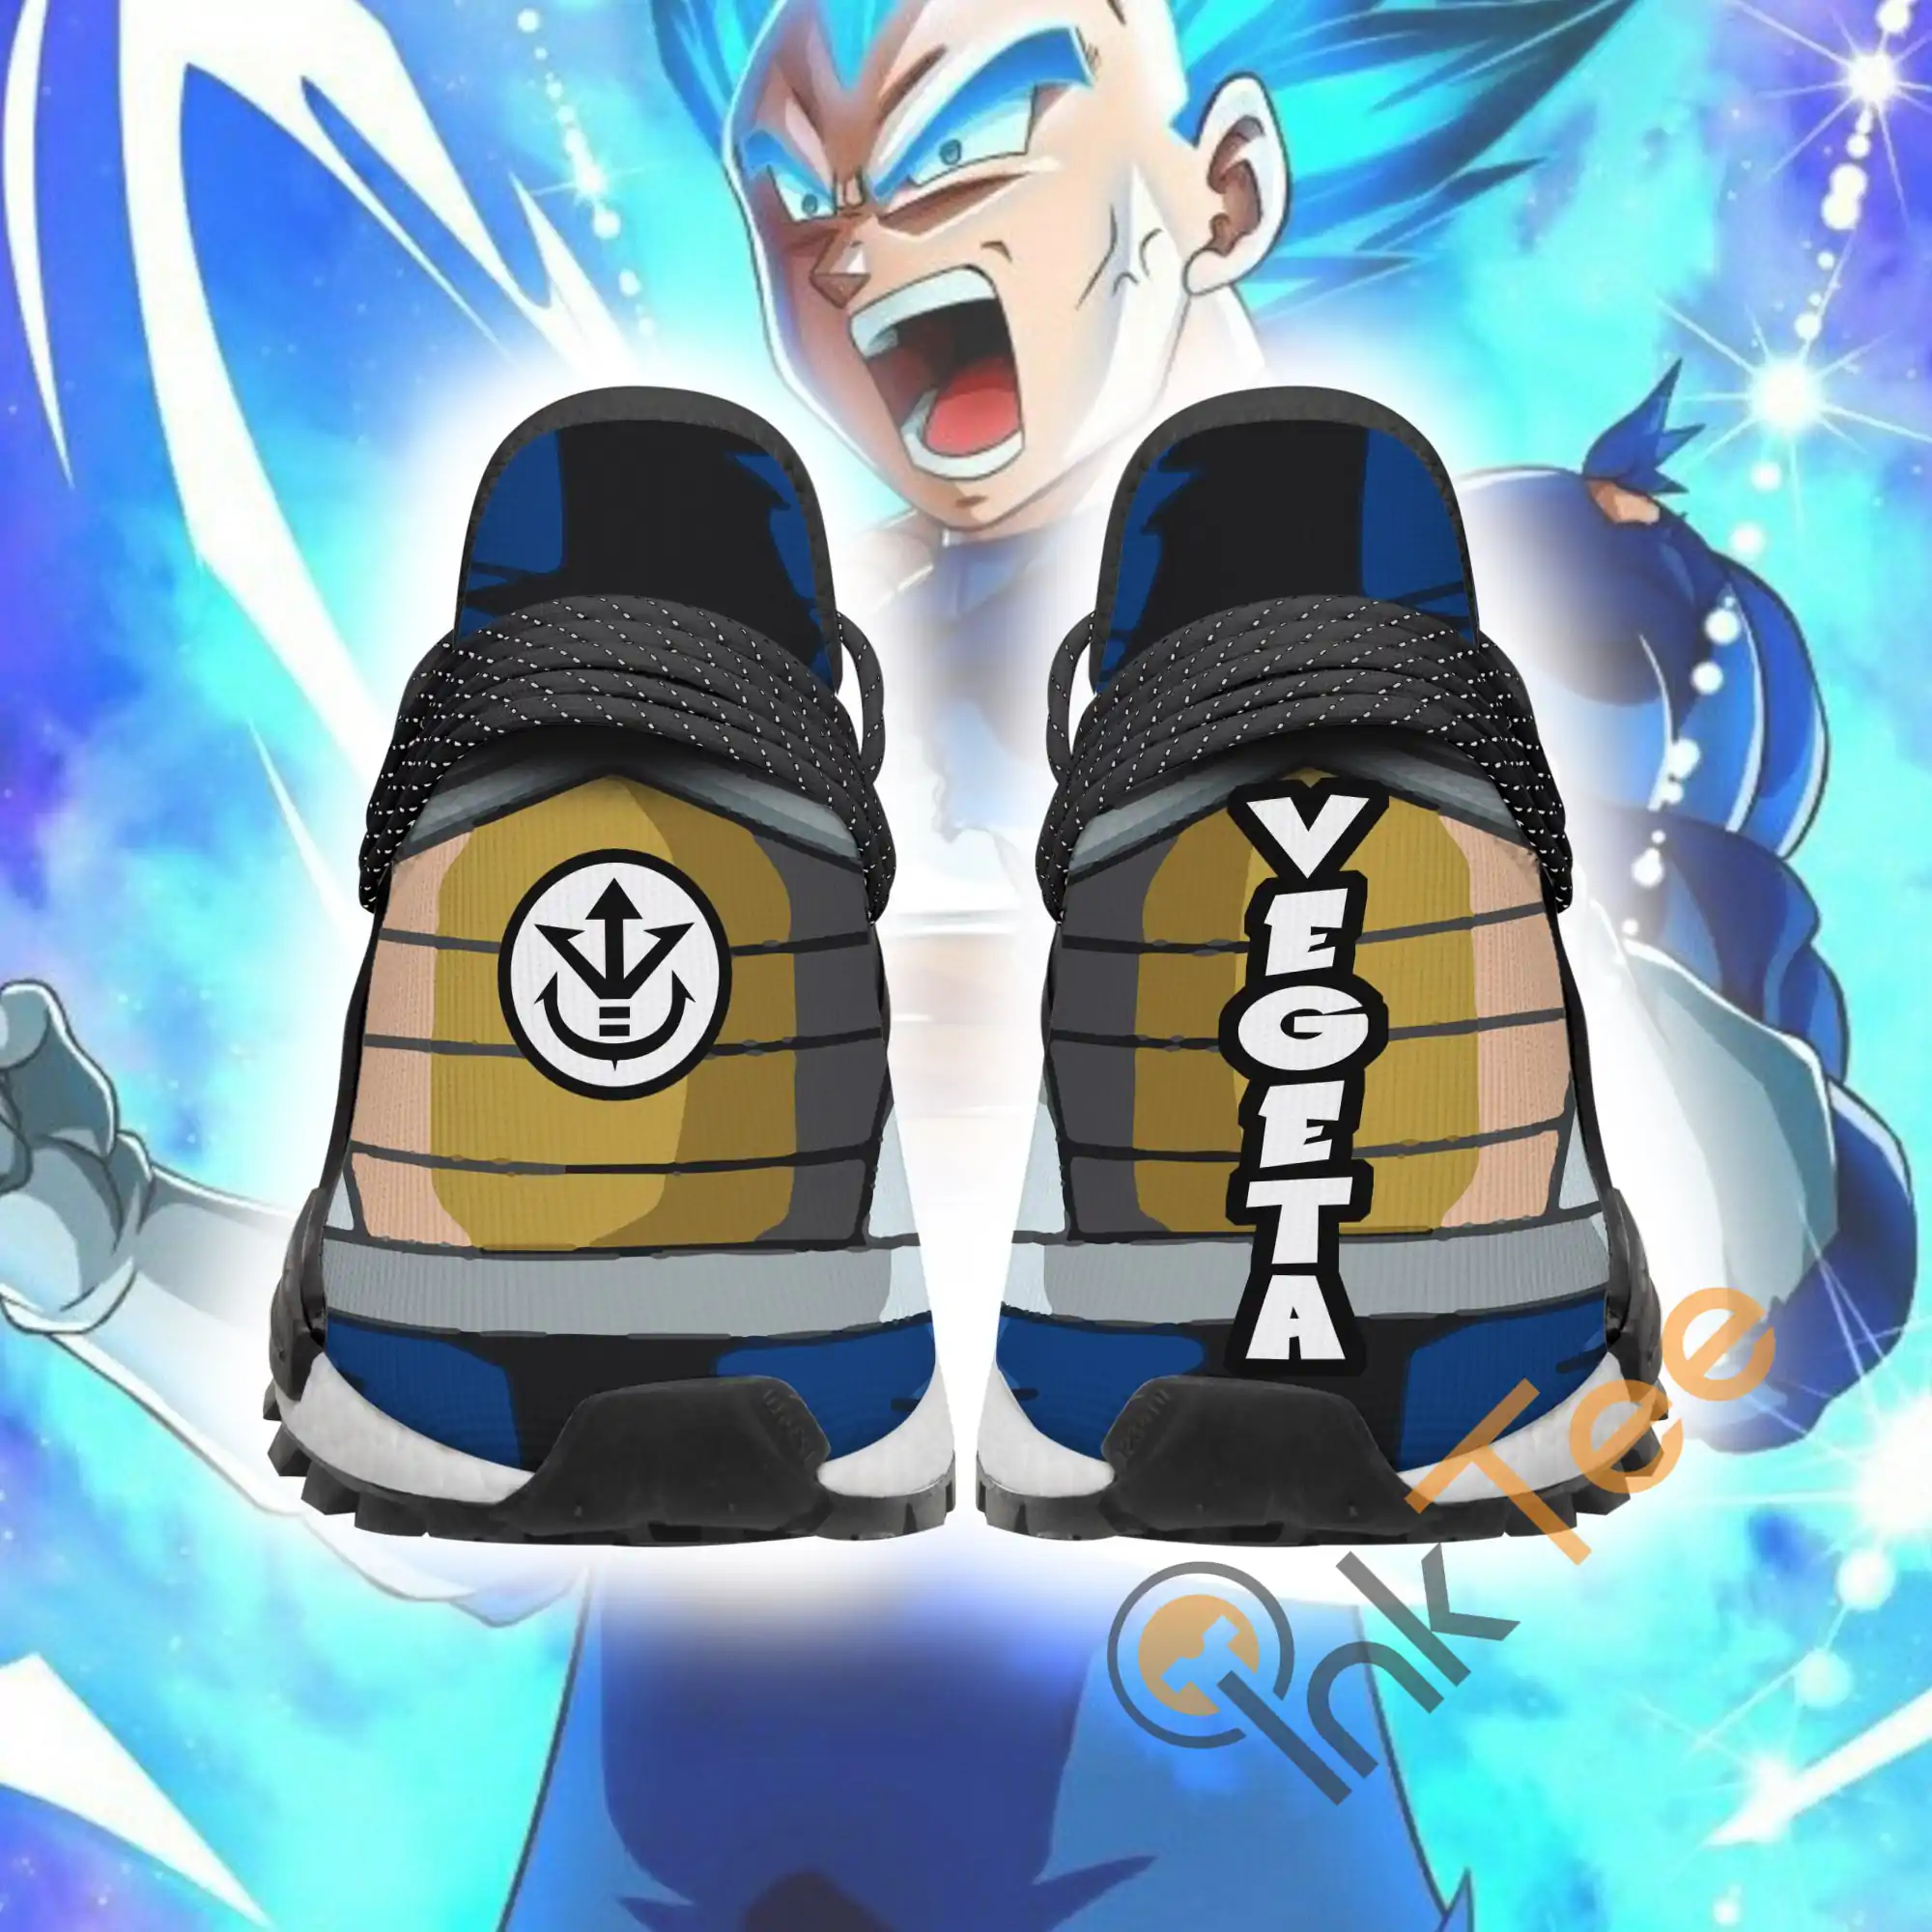 Prince Vegeta Sporty Dragon Ball Super Anime Amazon NMD Human Shoes